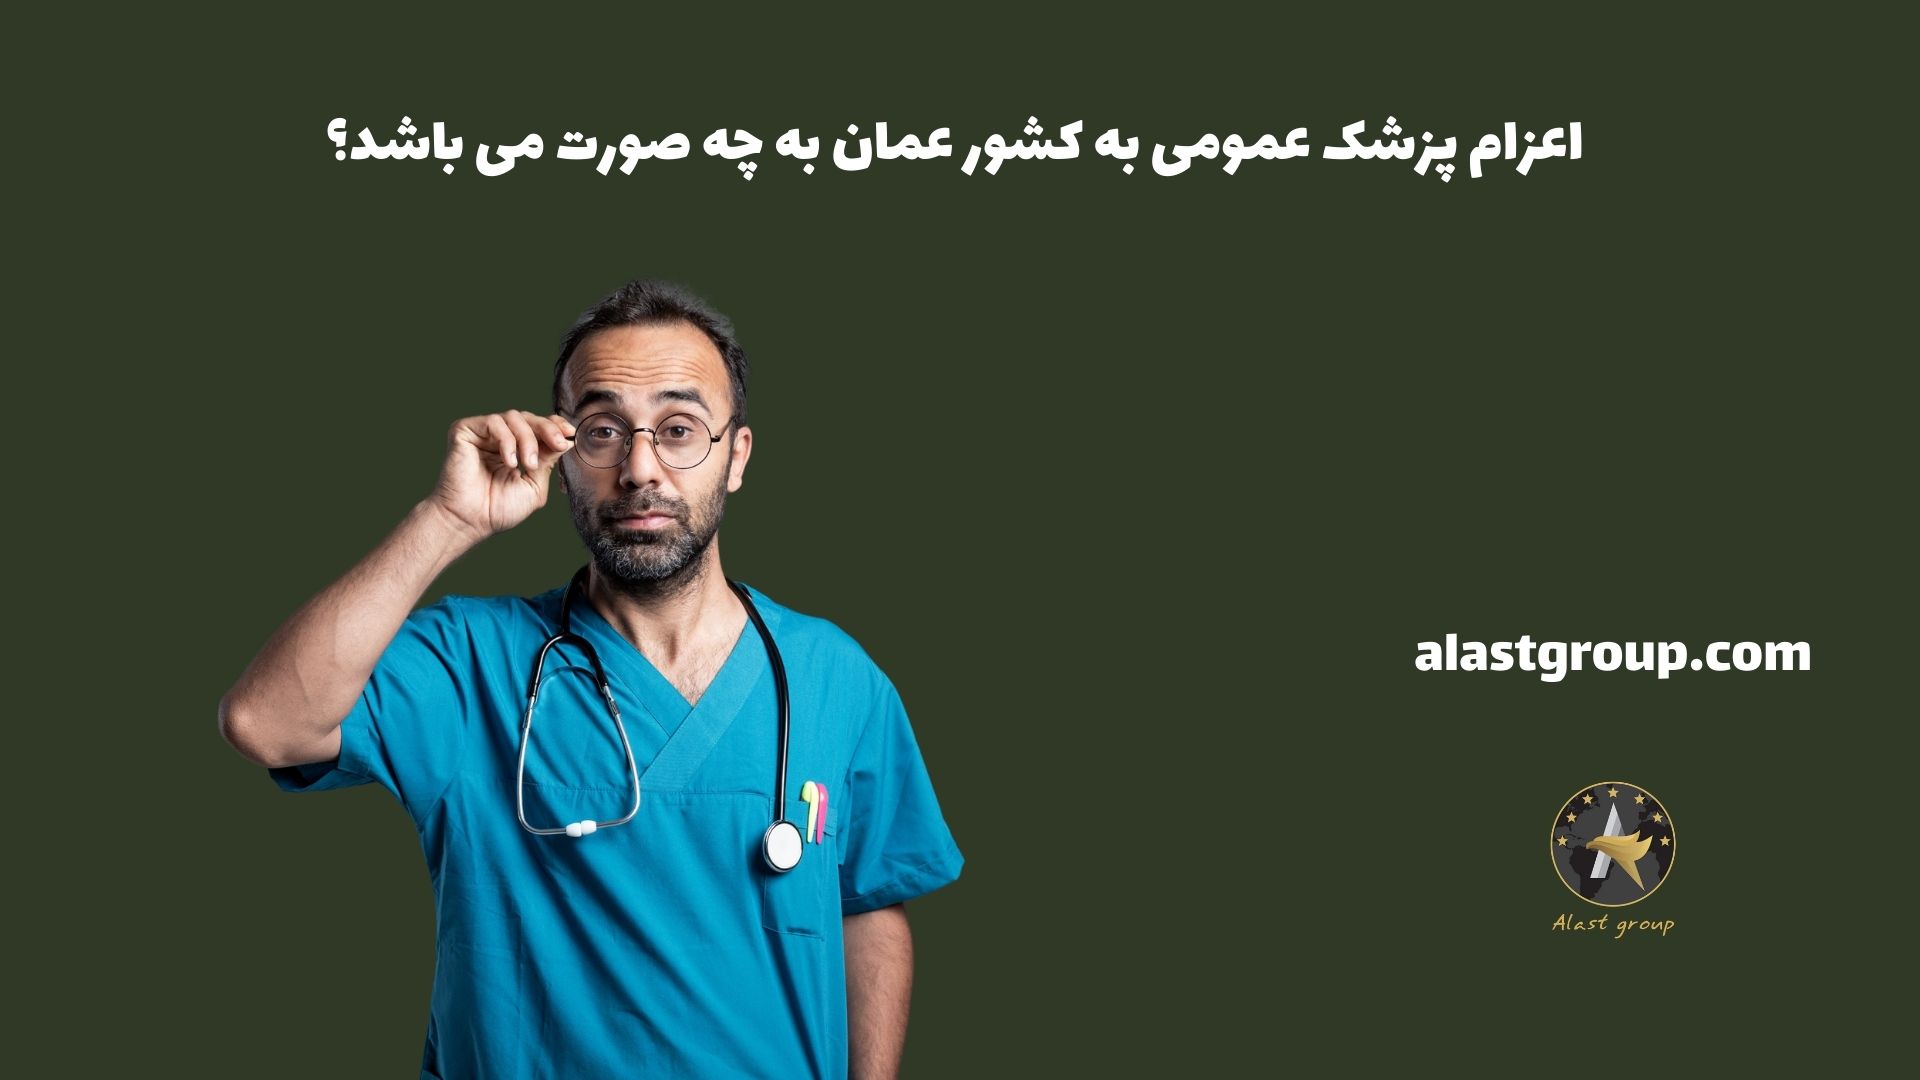 اعزام پزشک عمومی به کشور عمان به چه صورت می باشد؟